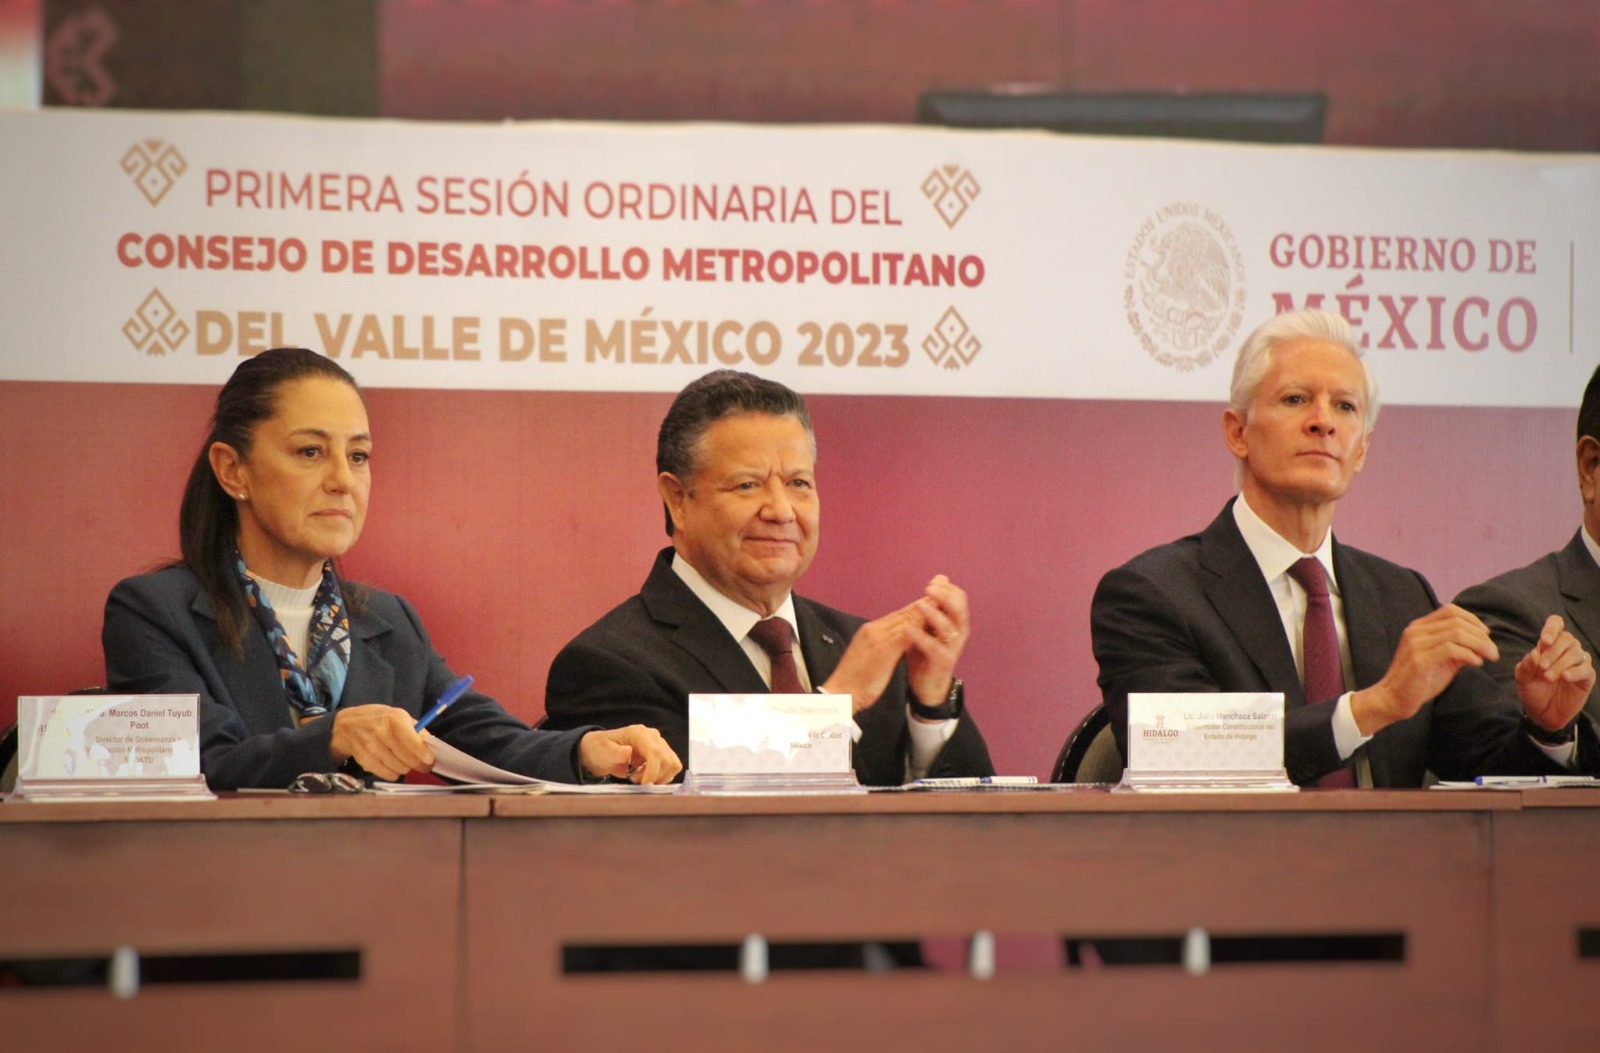 Acuerdos de las comisiones metropolitanas del Valle de México